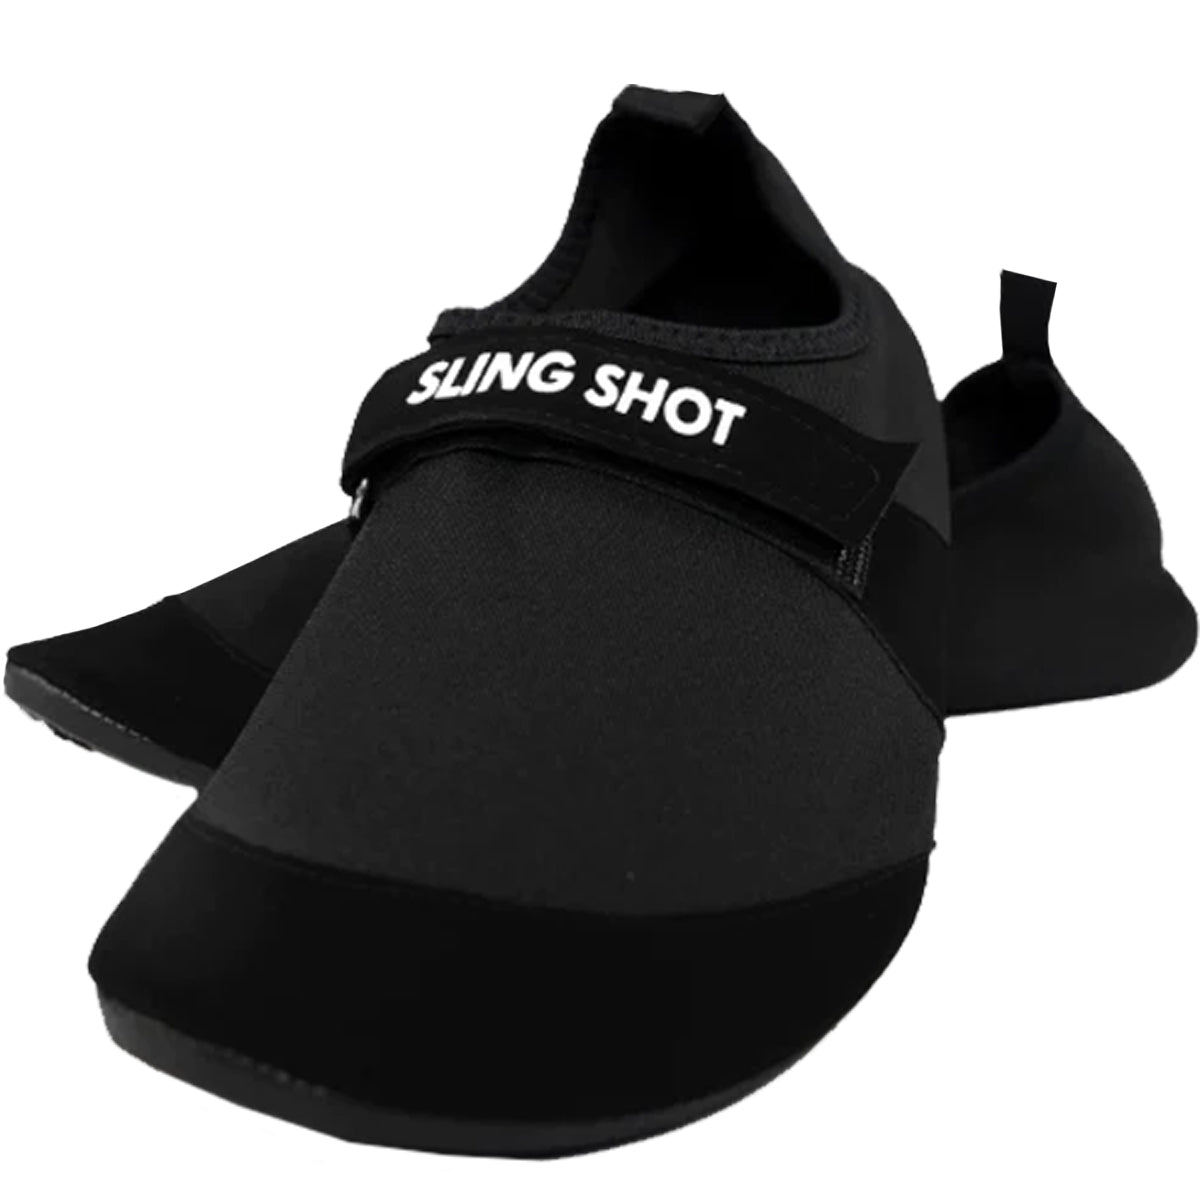 Sling Shot Deadlift Slippers by Mark Bell - Black Sling Shot